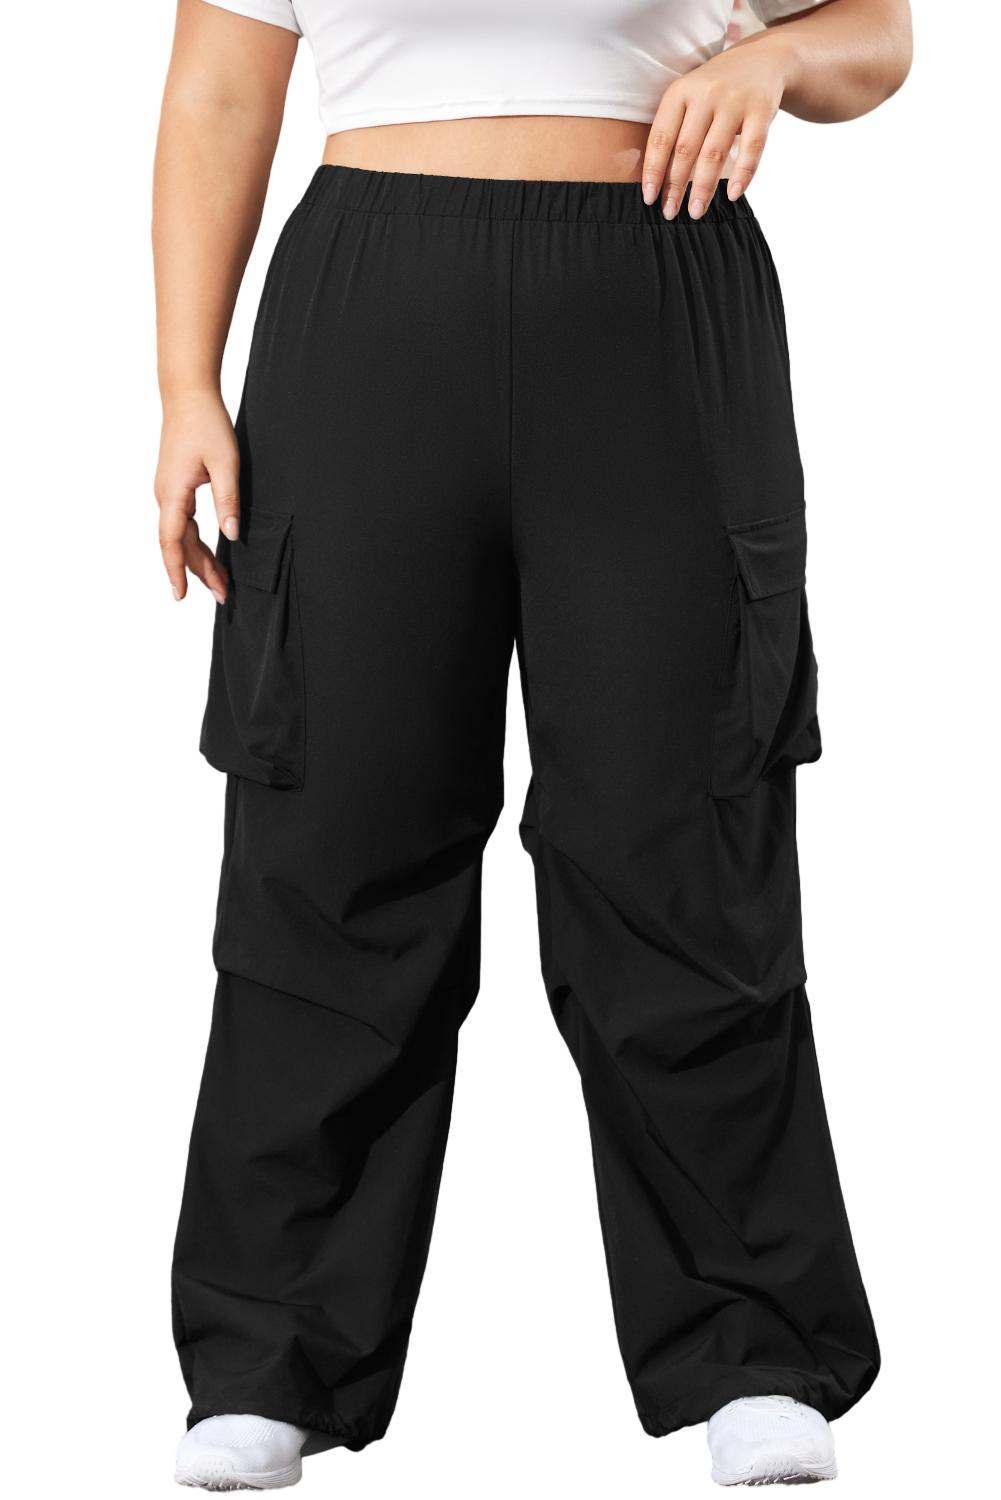 Pantalon cargo noir avec poche à rabat et taille élastique de grande taille